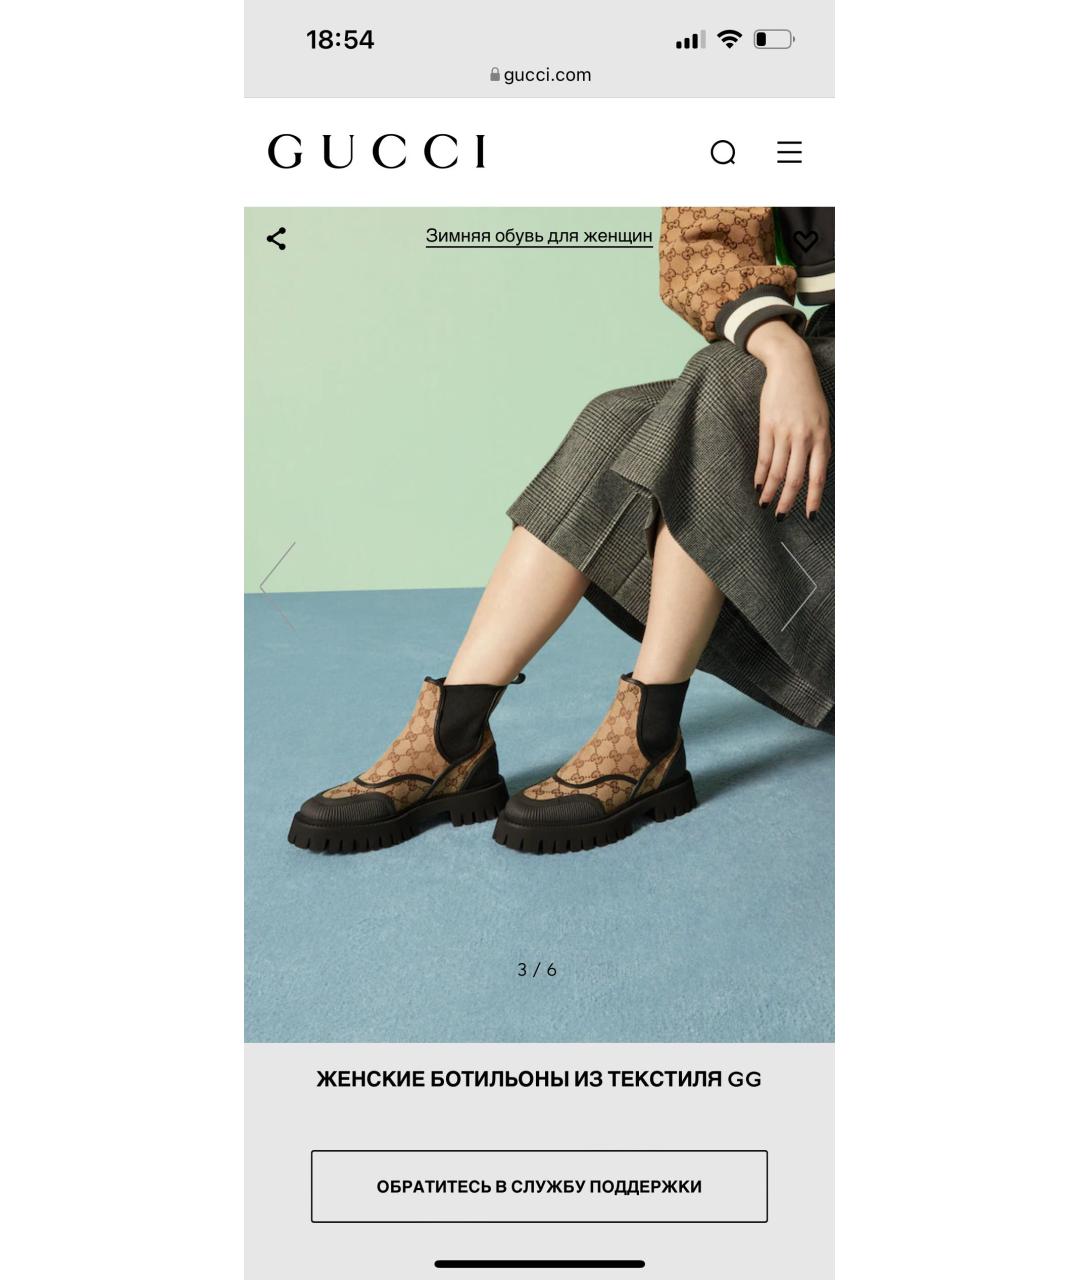 Ботинки GUCCI для женщин купить за 120000 руб, арт. 1581077 –  Интернет-магазин Oskelly